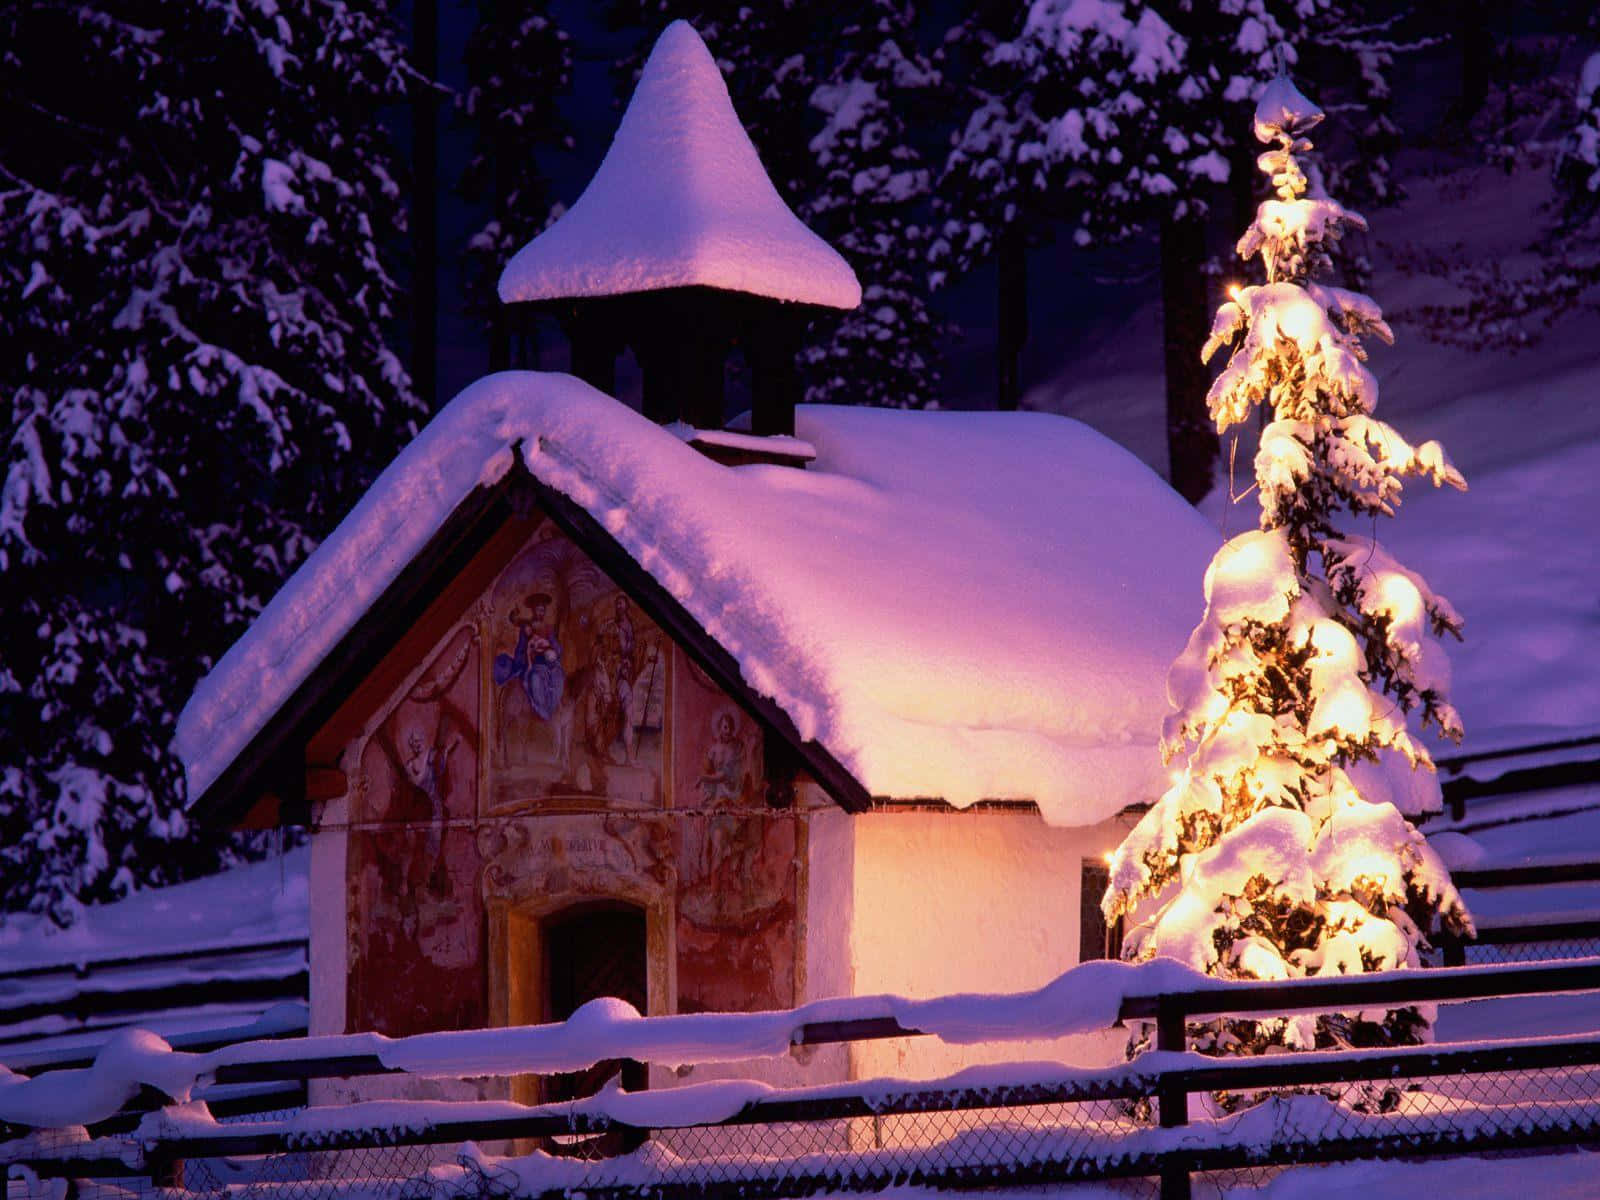 Celebreas Festas Com Um Natal Branco E Nevado!